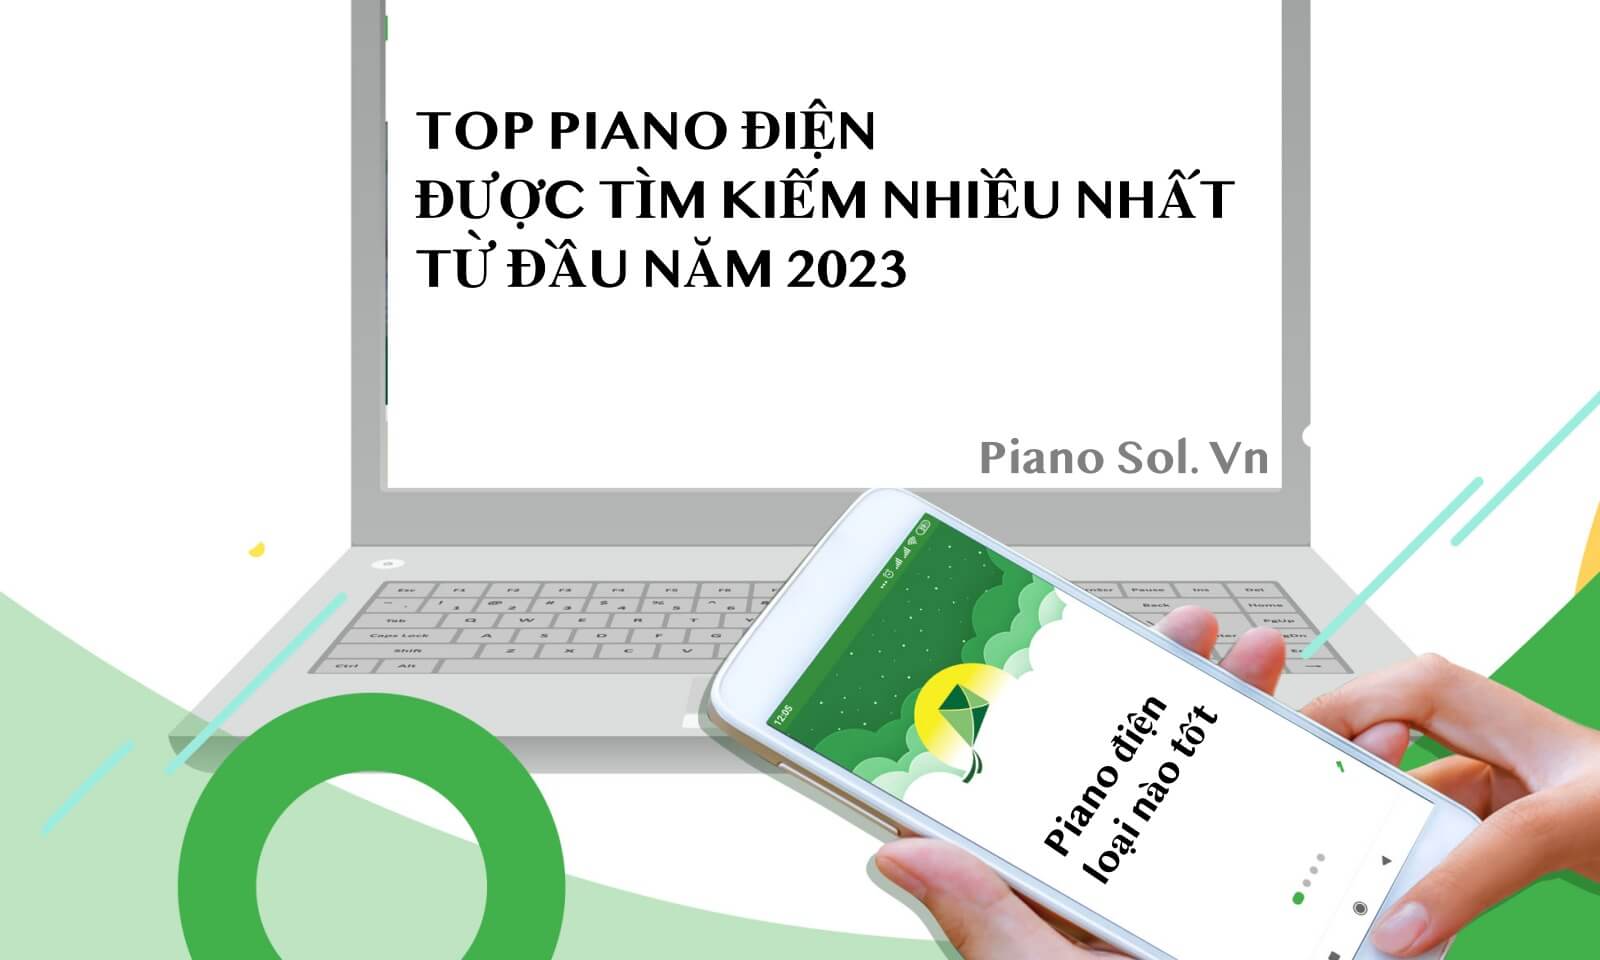 Top 5 Đàn Piano Điện Được tìm Kiếm Nhiều Nhất Năm 2023